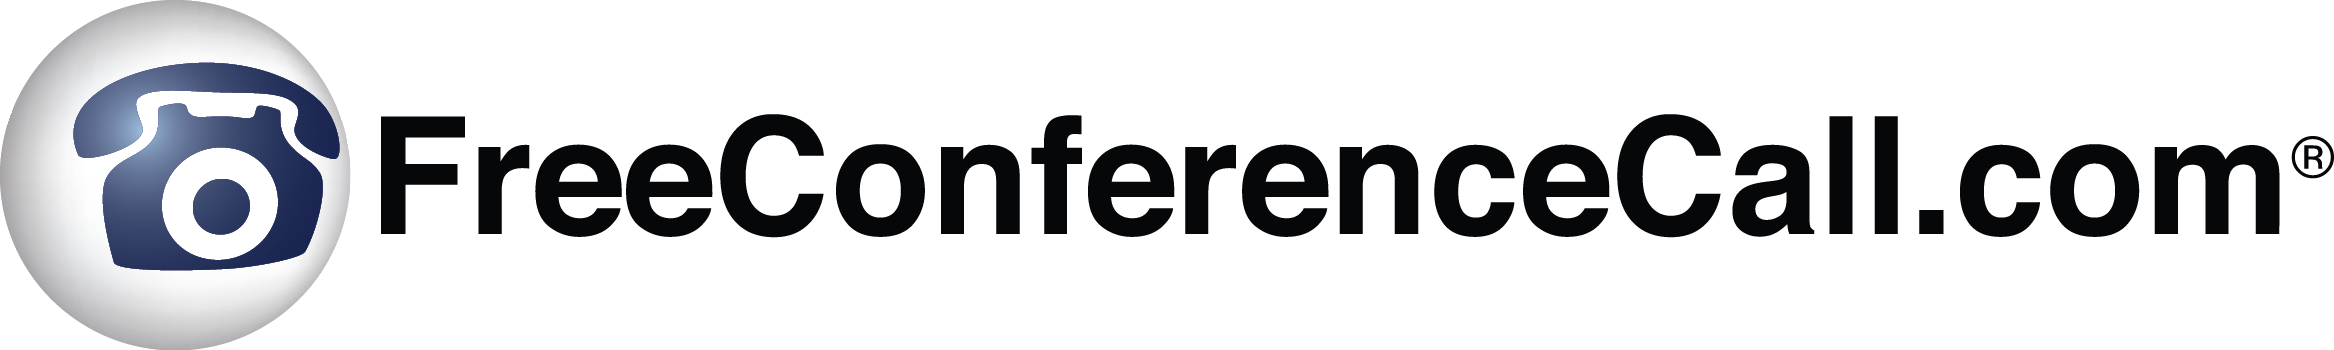 FreeConferenceCall.com horizontal logo